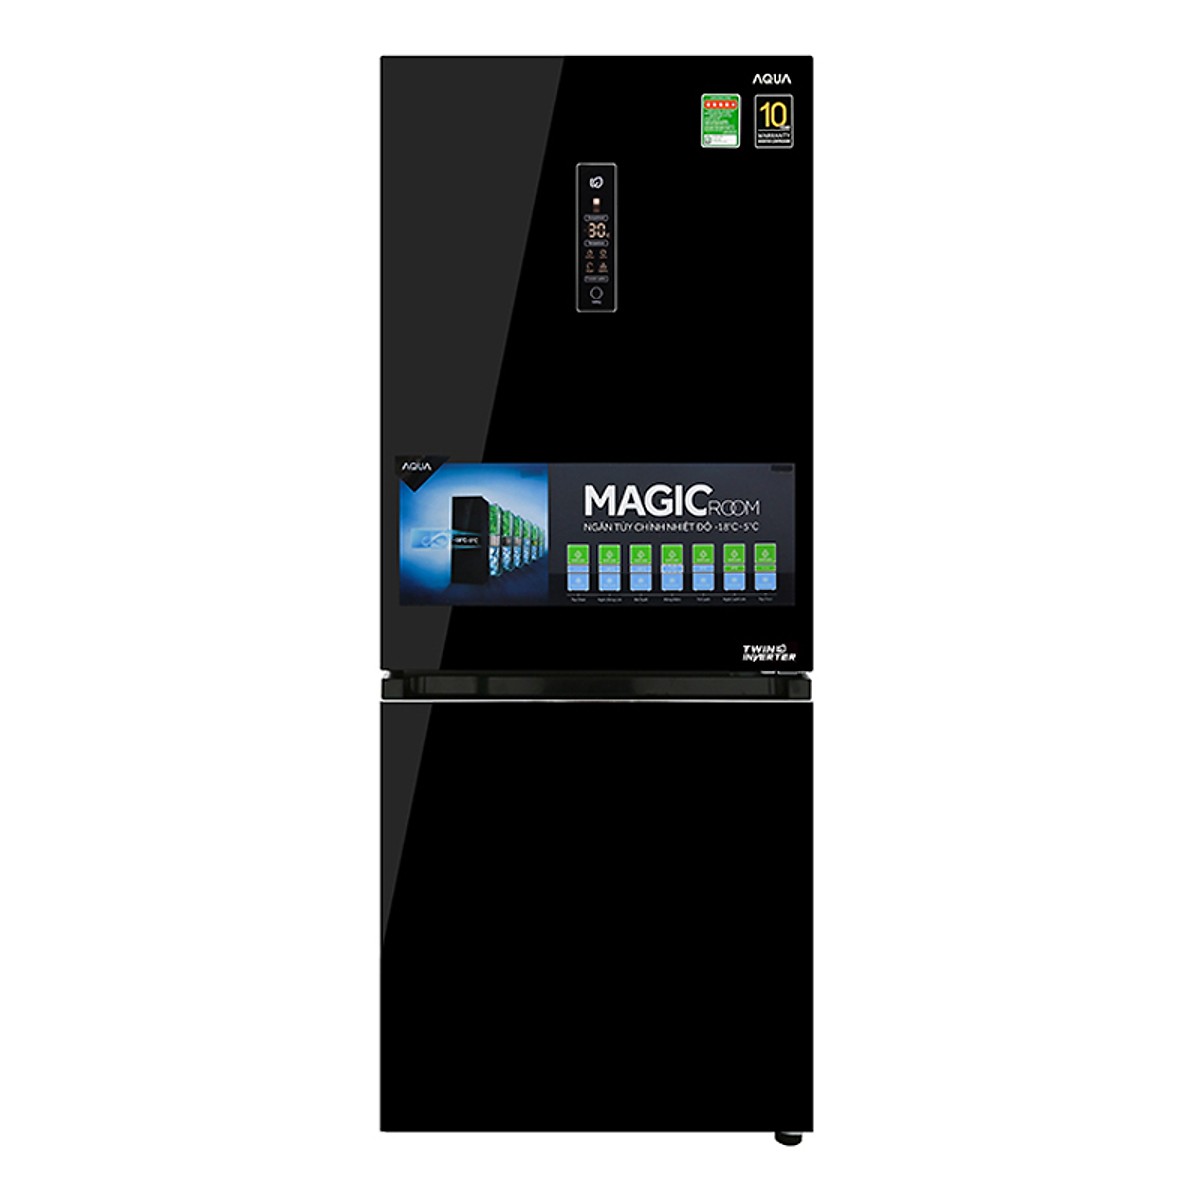 Tủ Lạnh Inverter Aqua AQR-IG298EB-GB (260L) - Hàng Chính Hãng + Tặng Bình Đun Siêu Tốc